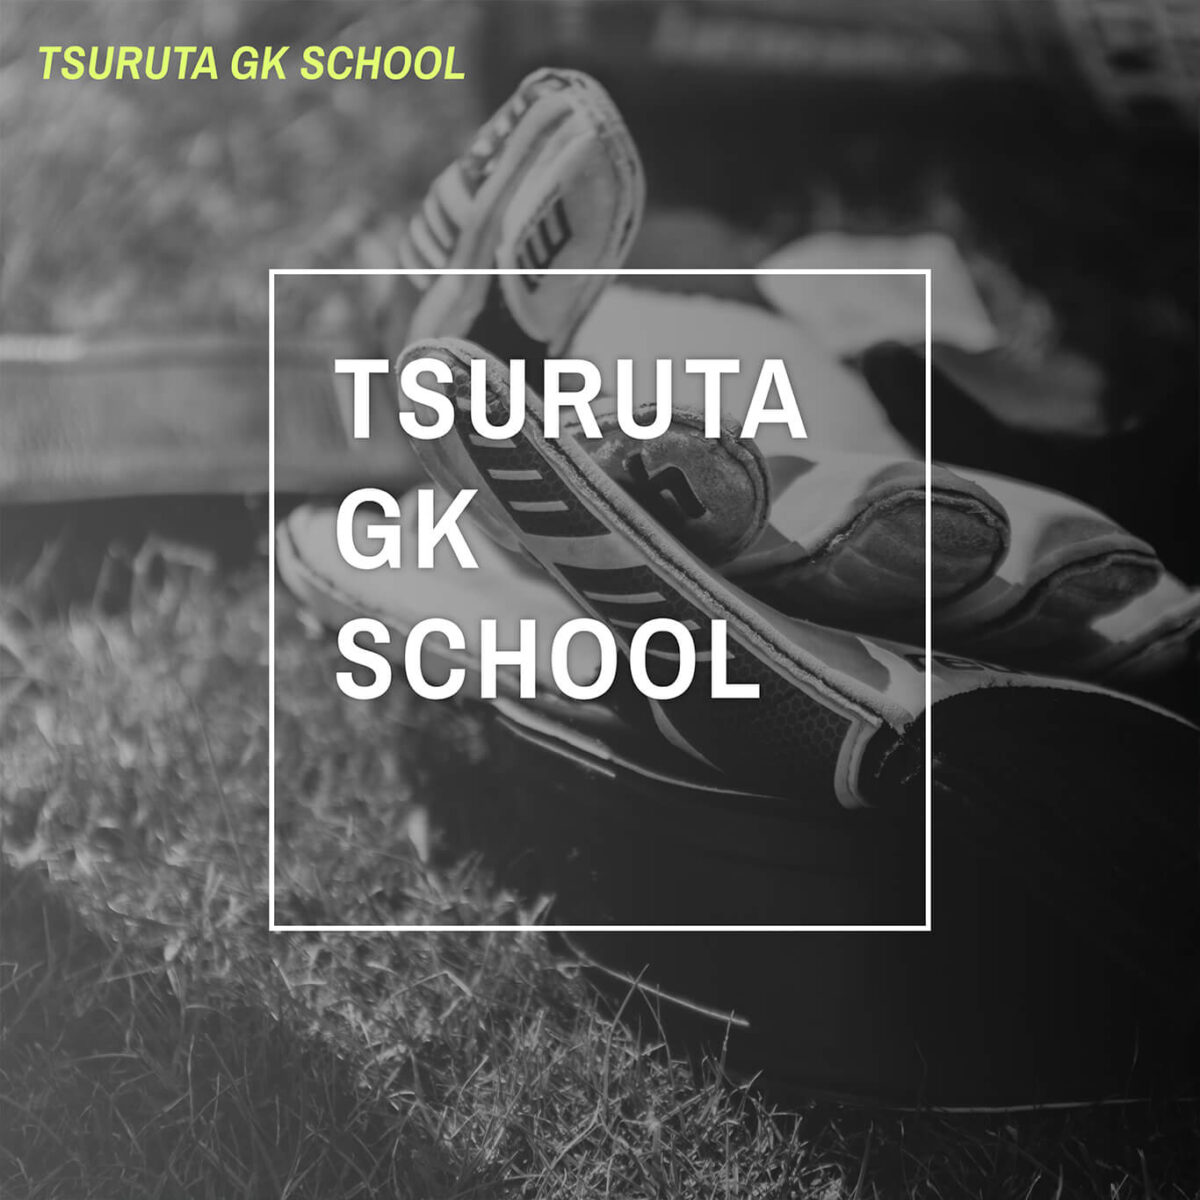 TSURUTA GK SCHOOL